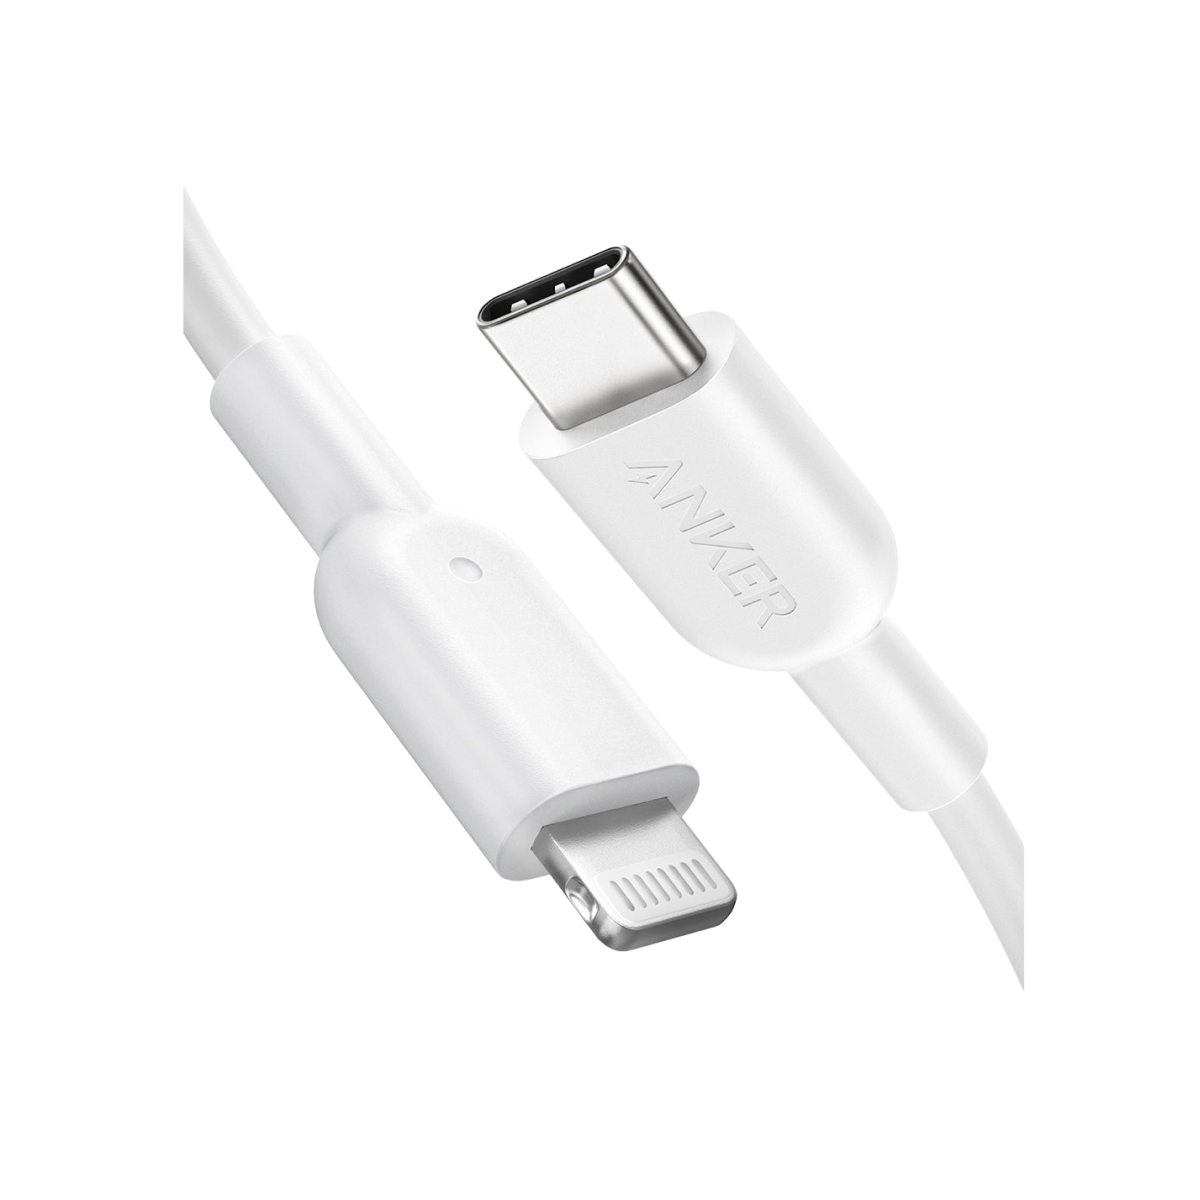 Anker <b>321</b> USB-C to Lightning Cable (3 ft / 6 ft / 10 ft)